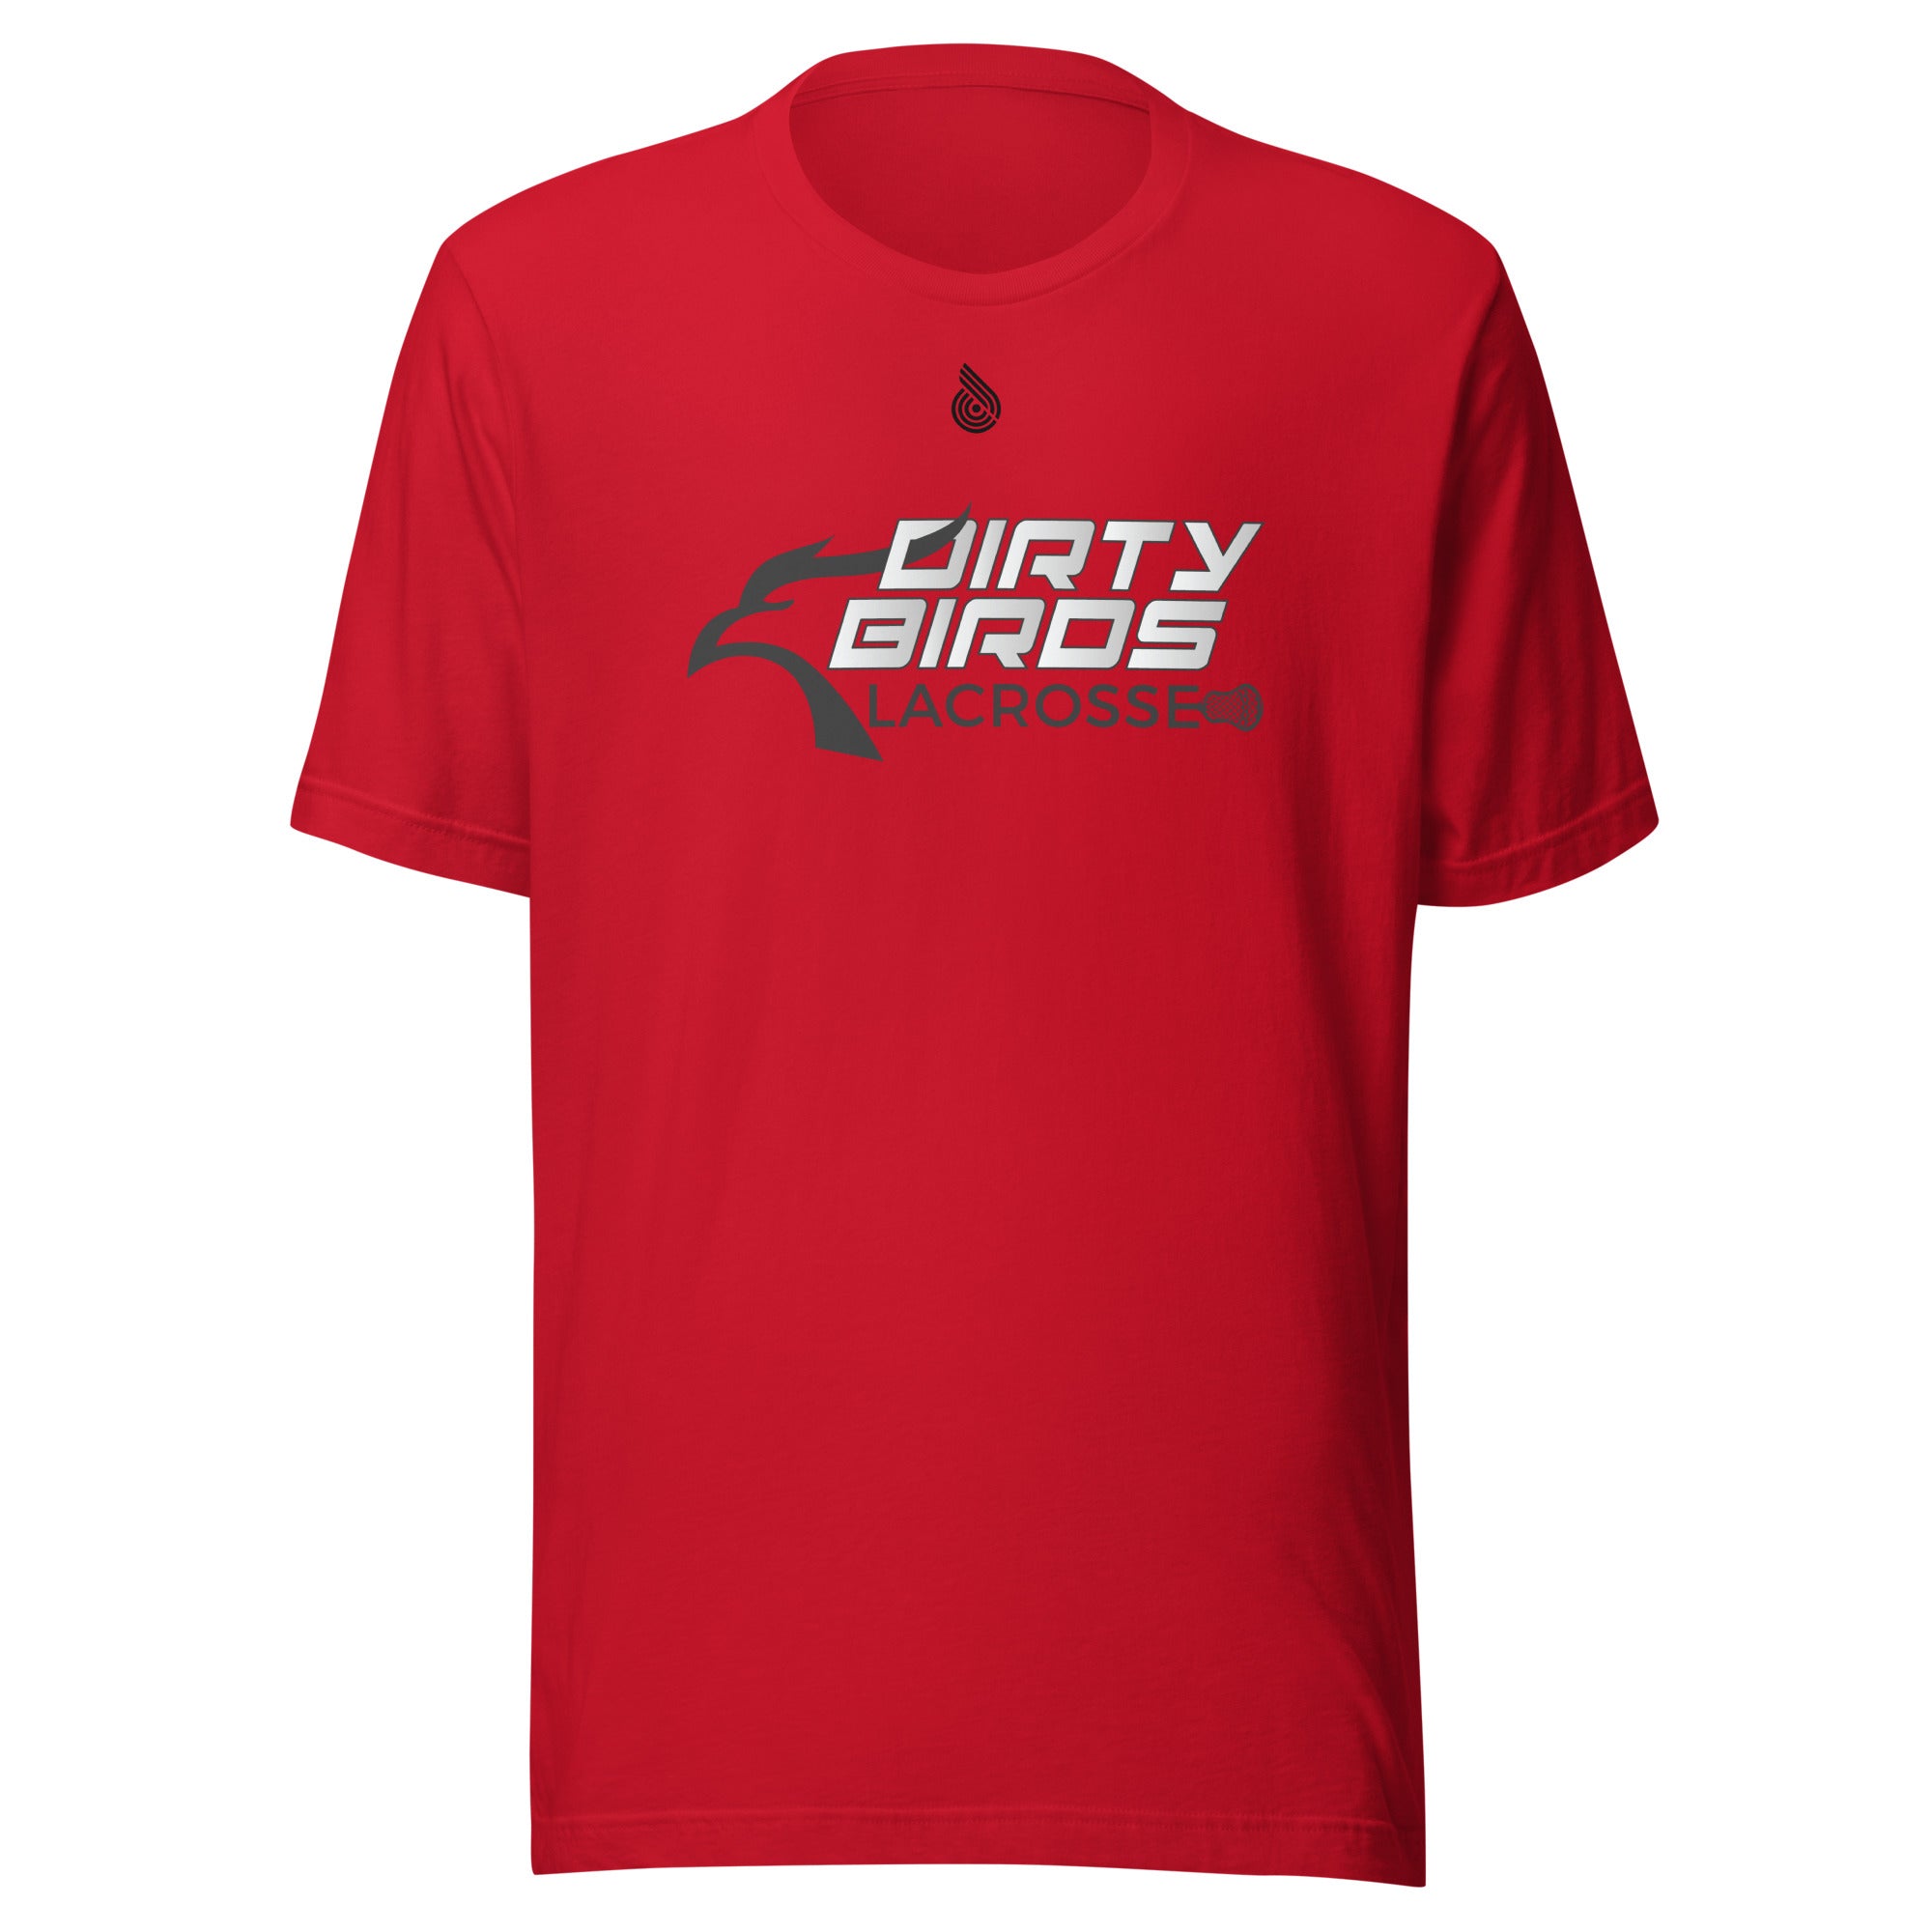 Dirty Birds Unisex t-shirt